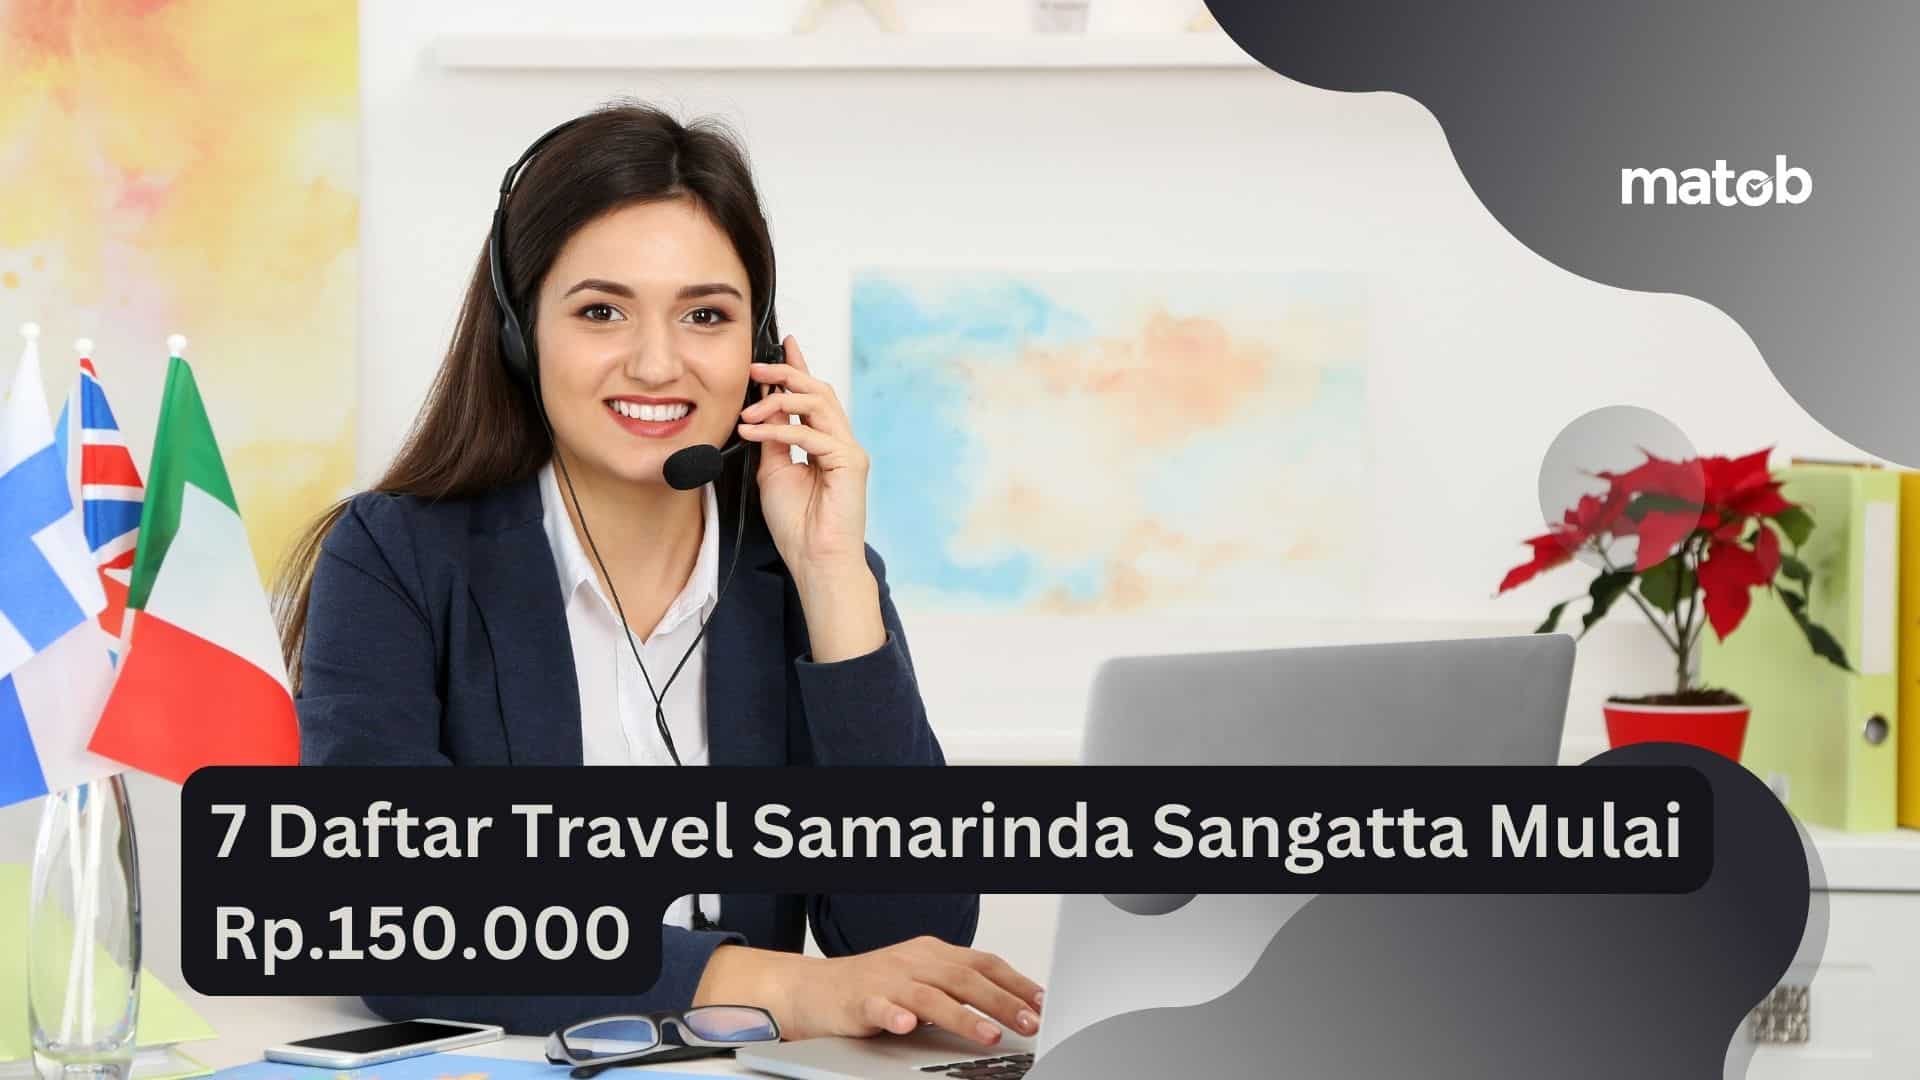 7 Daftar Travel Samarinda Sangatta Mulai Rp.150.000